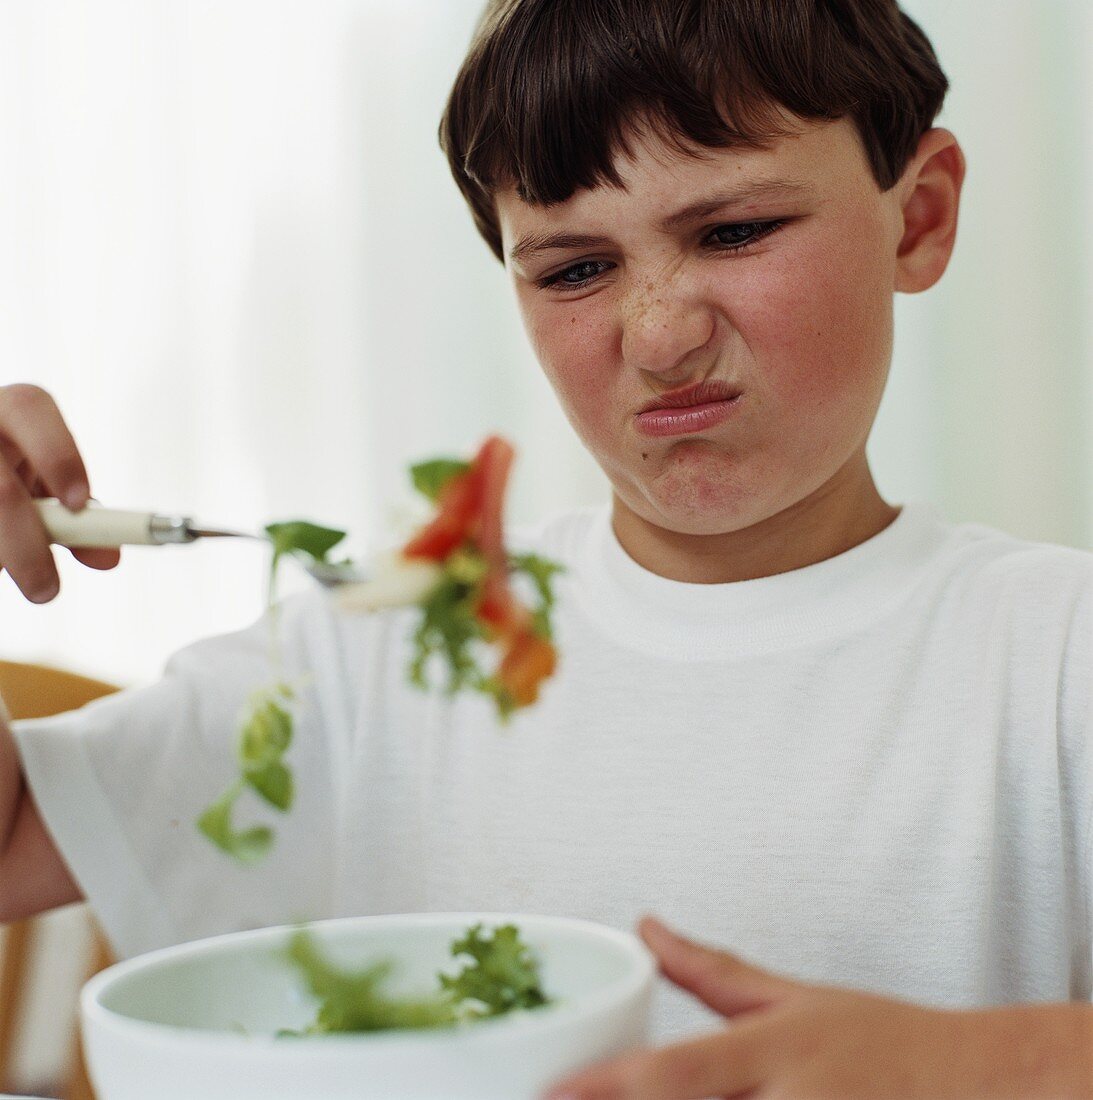 Junge ist vom Salat angewidert